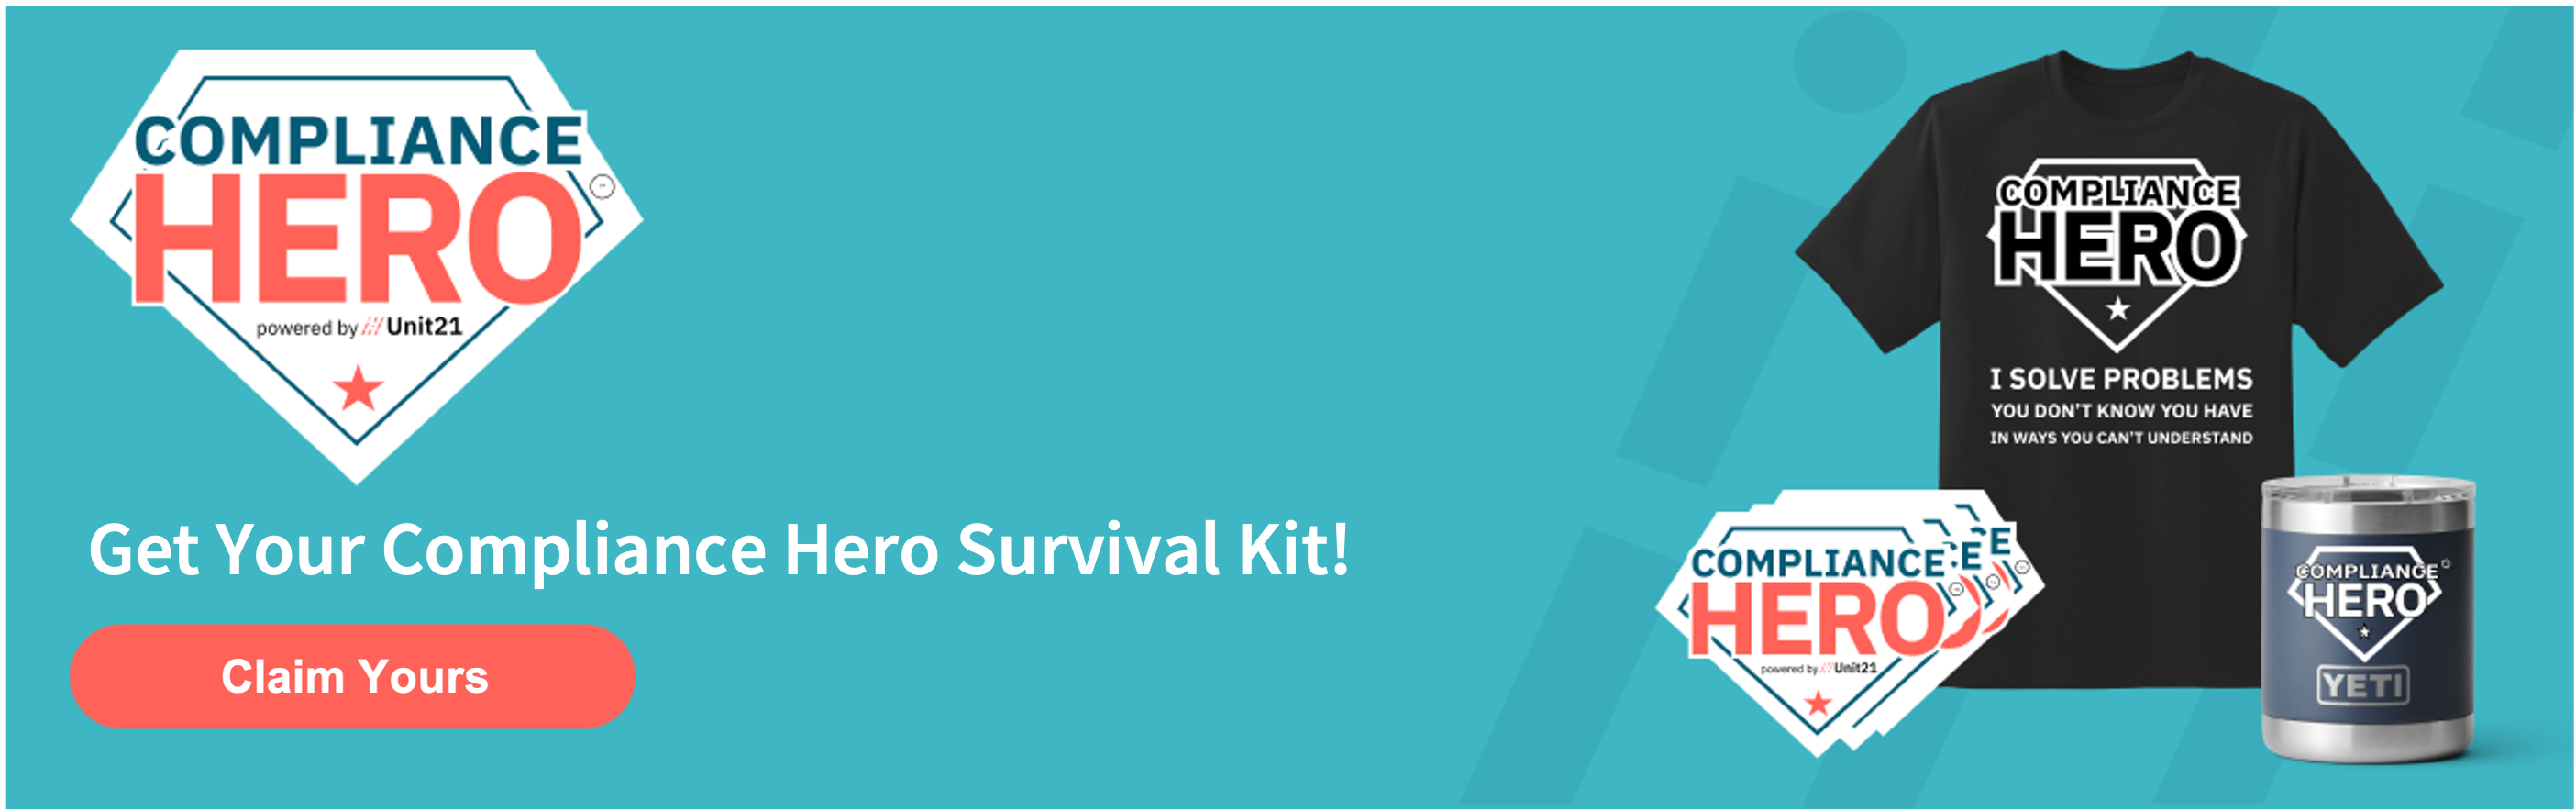 Compliance Hero Survival Kit